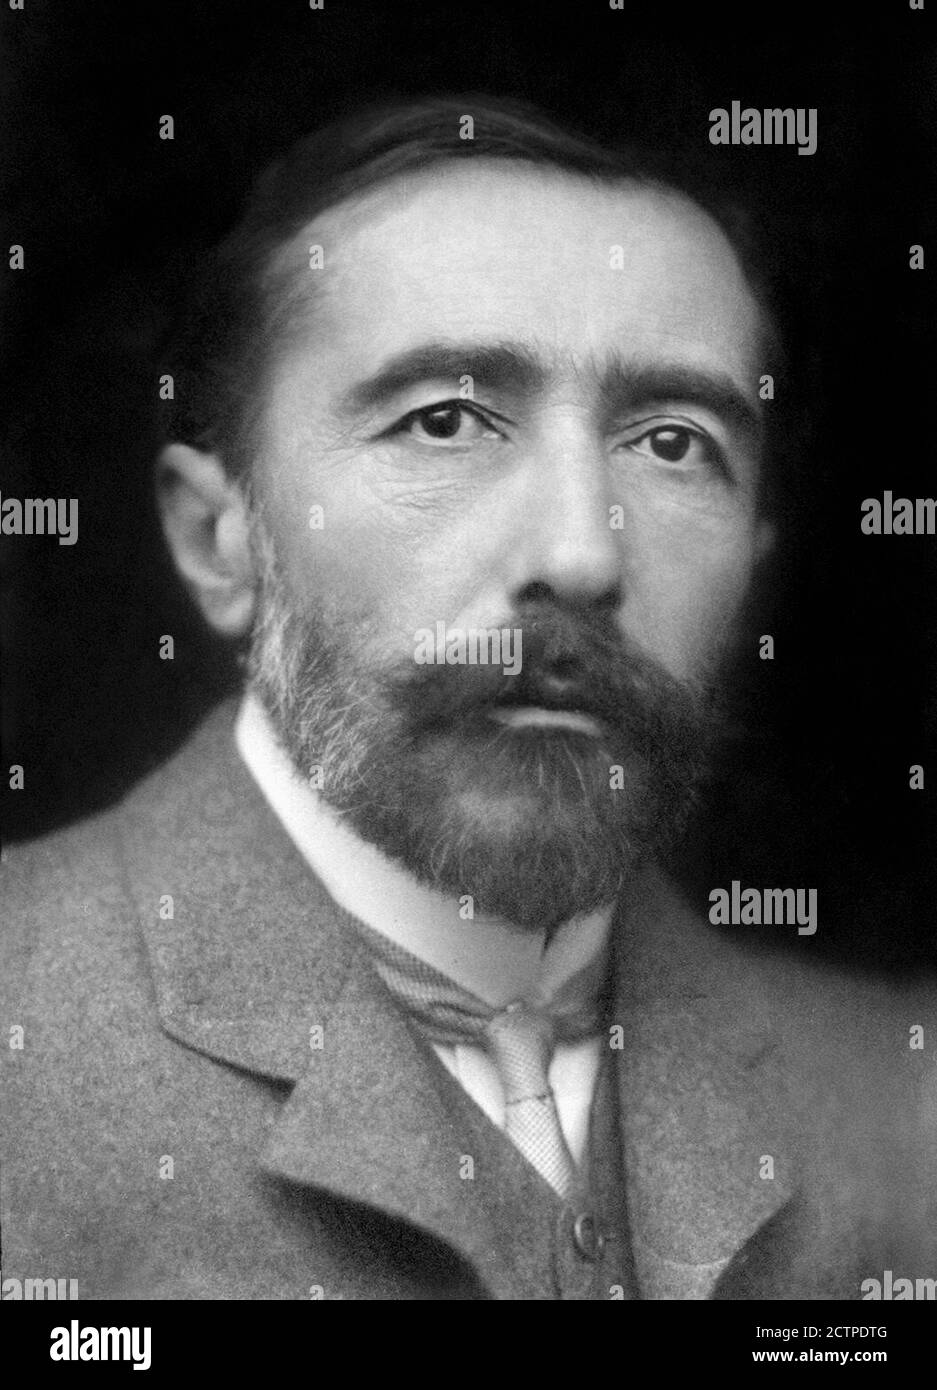 Joseph Conrad. Ritratto dello scrittore polacco-britannico Józef Teodor Konrad Korzeniowski (1857-1924) di George Charles Beresford, 1904 Foto Stock